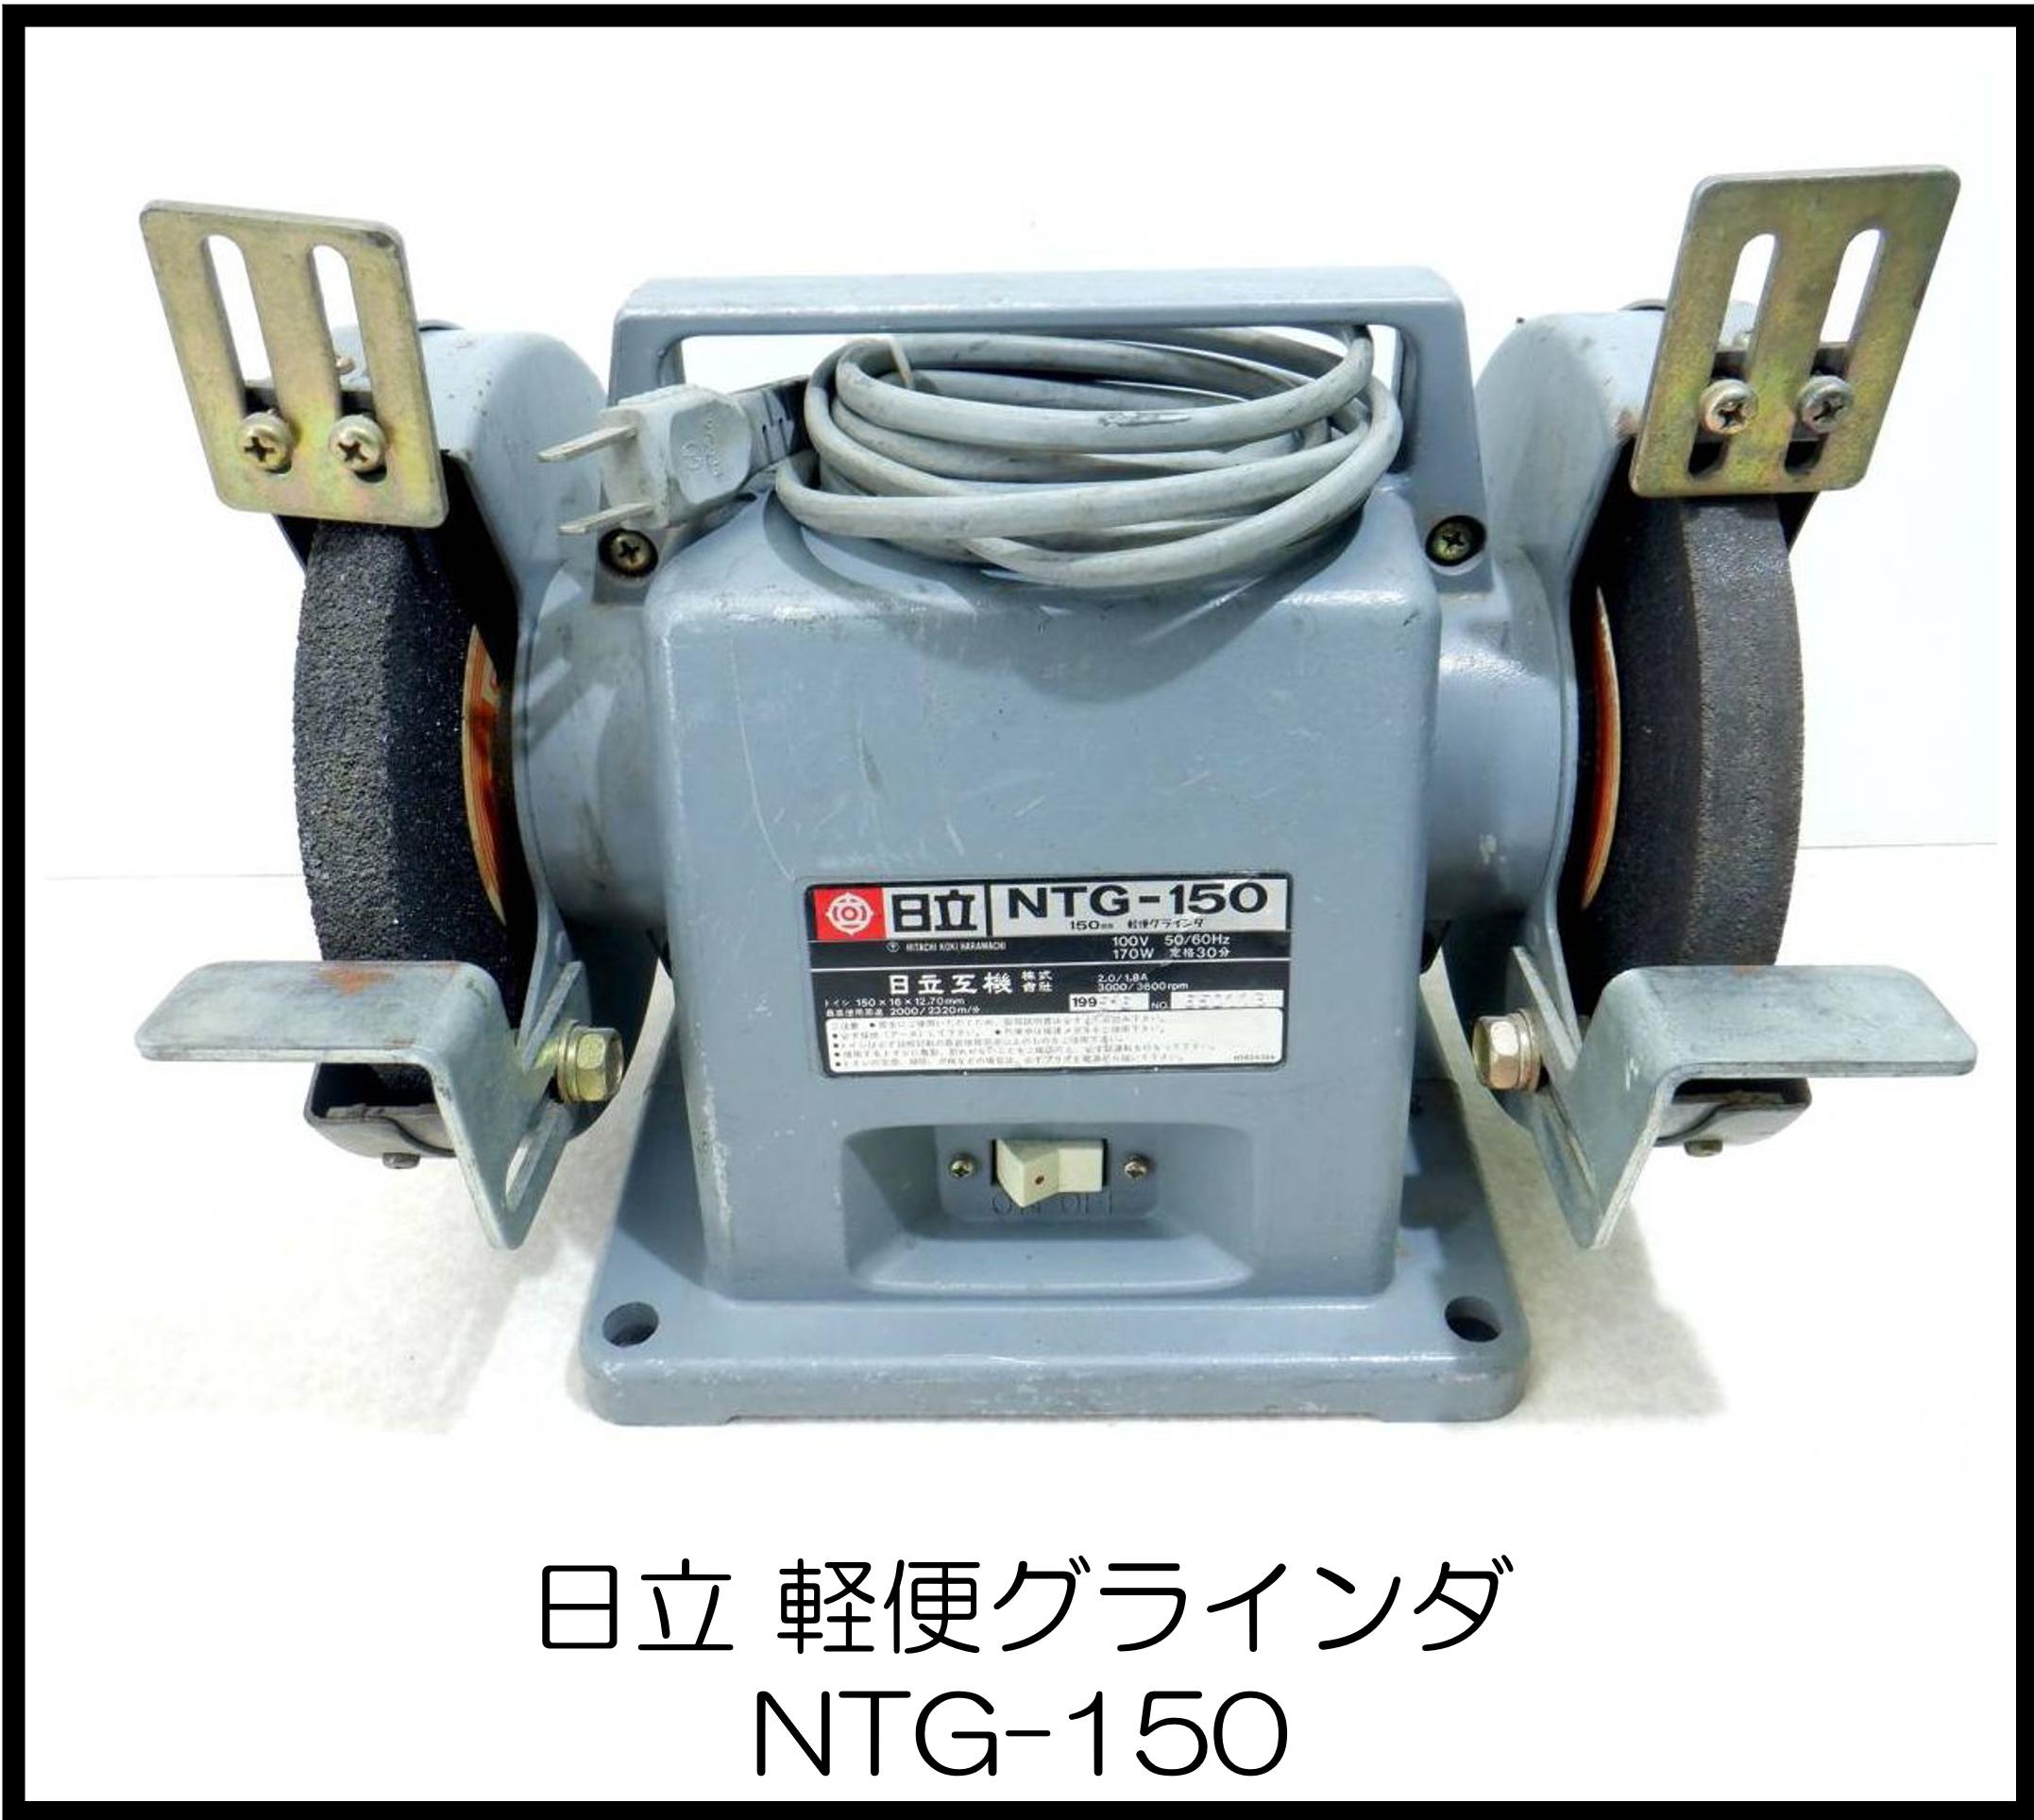 日立 軽便グラインダ NTG-150 大阪工具買取エスクライン